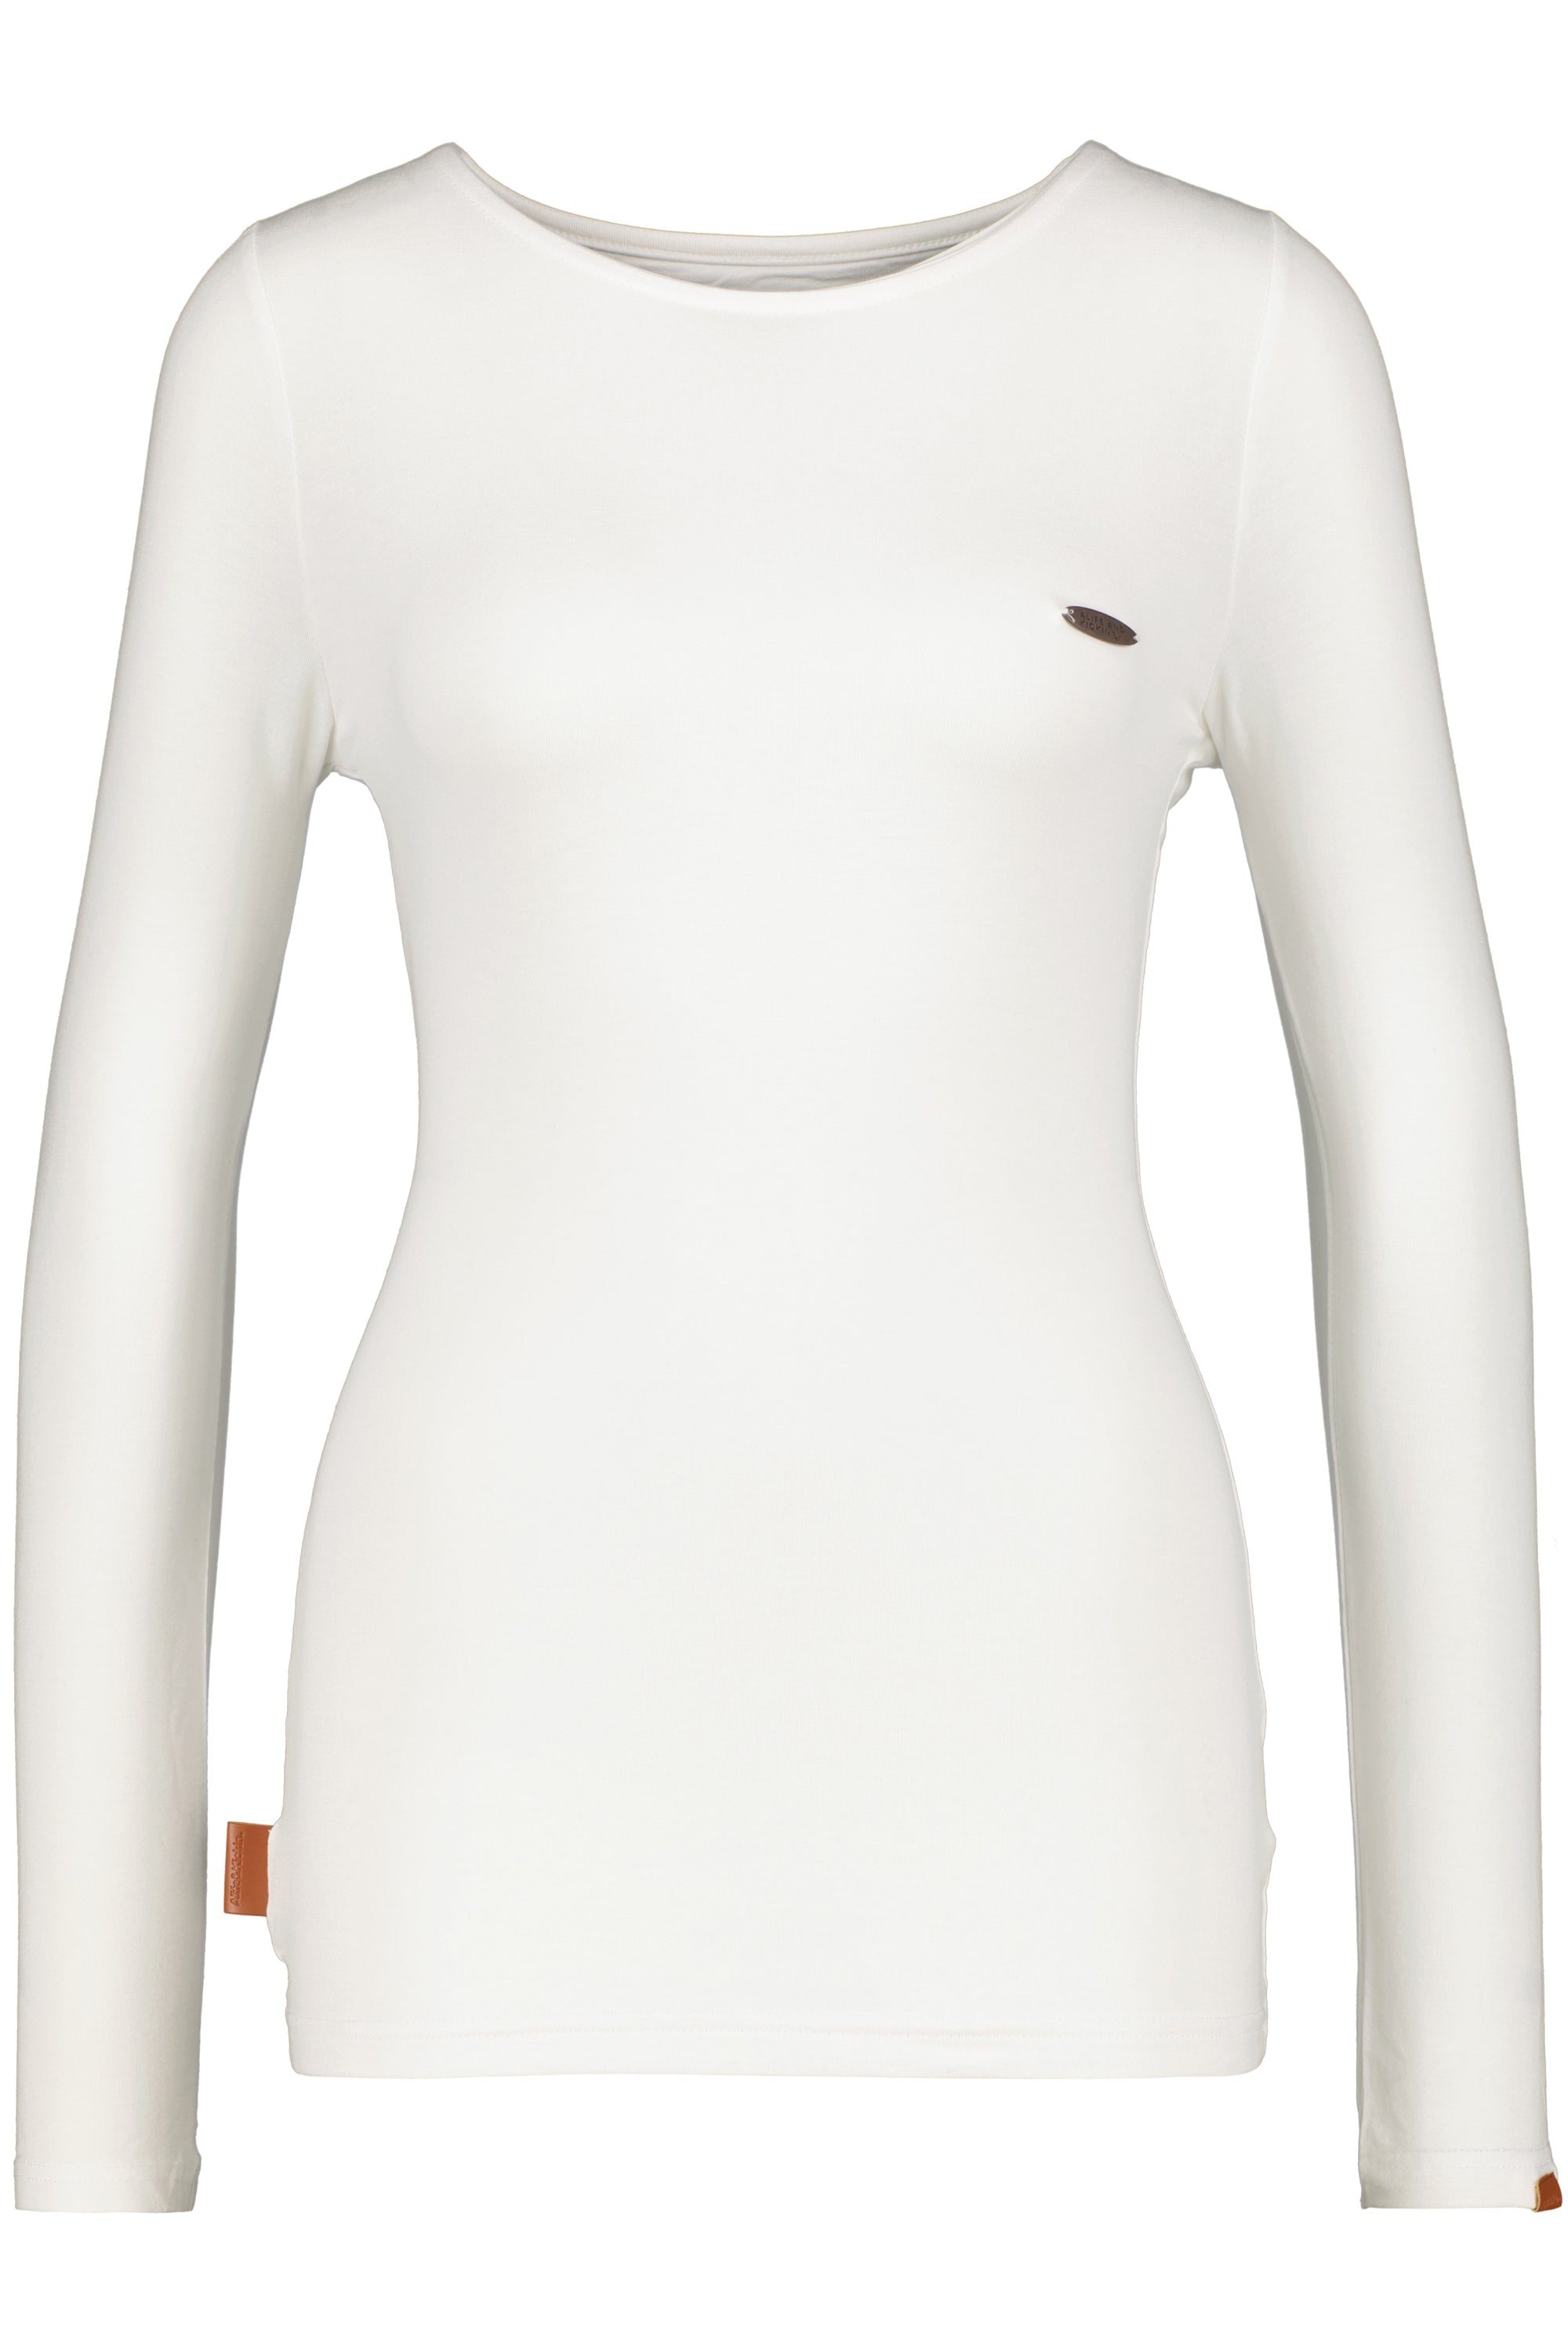 SinaAK Langarmshirt für Damen - Sportlicher Look für jede Gelegenheit Weiß